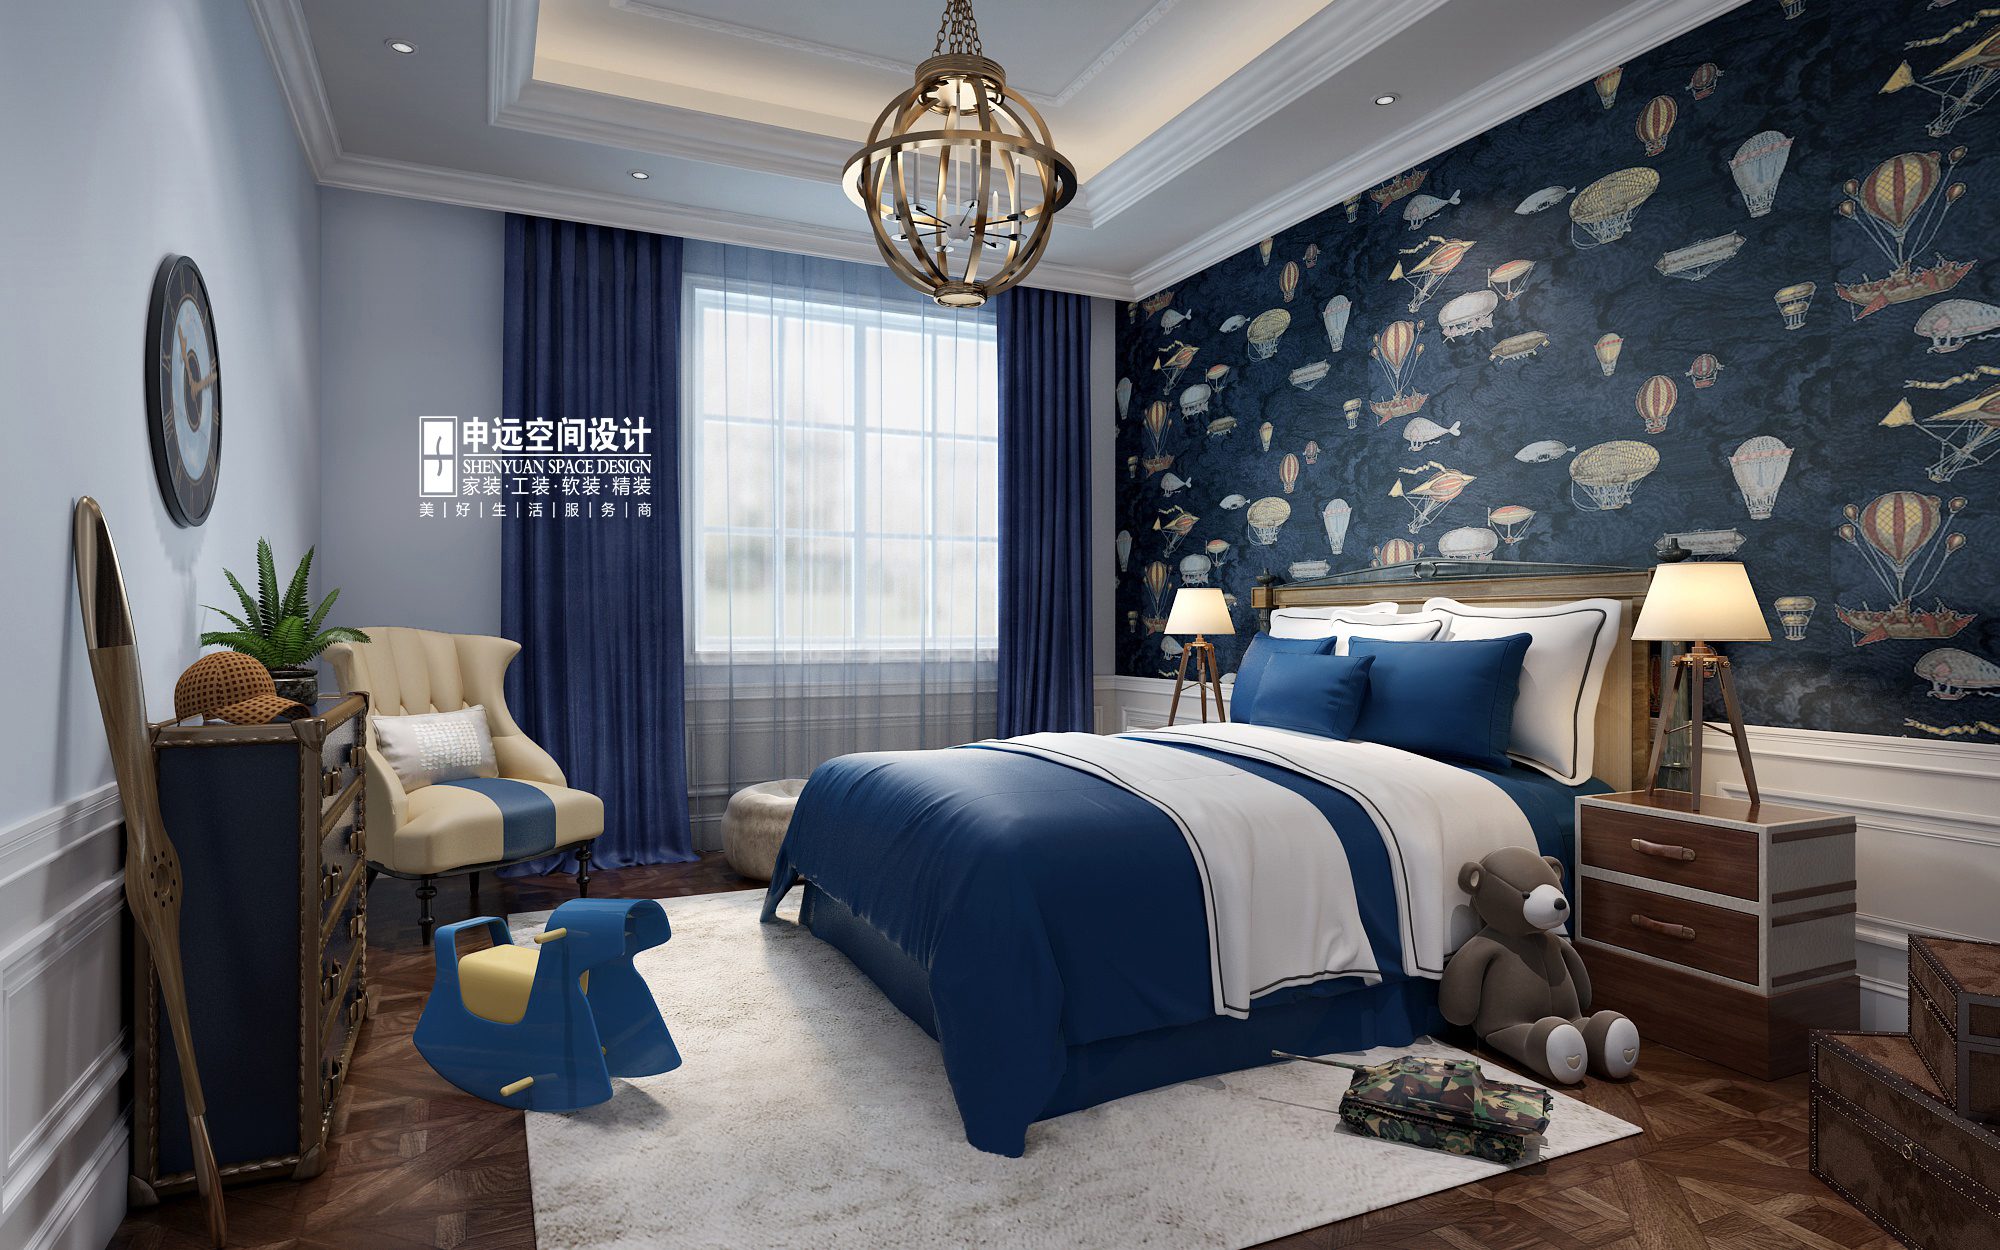 别墅 新古典 欧式 申远 别墅装修 儿童房图片来自申远空间设计北京分公司在优山美地-新古典风格的分享